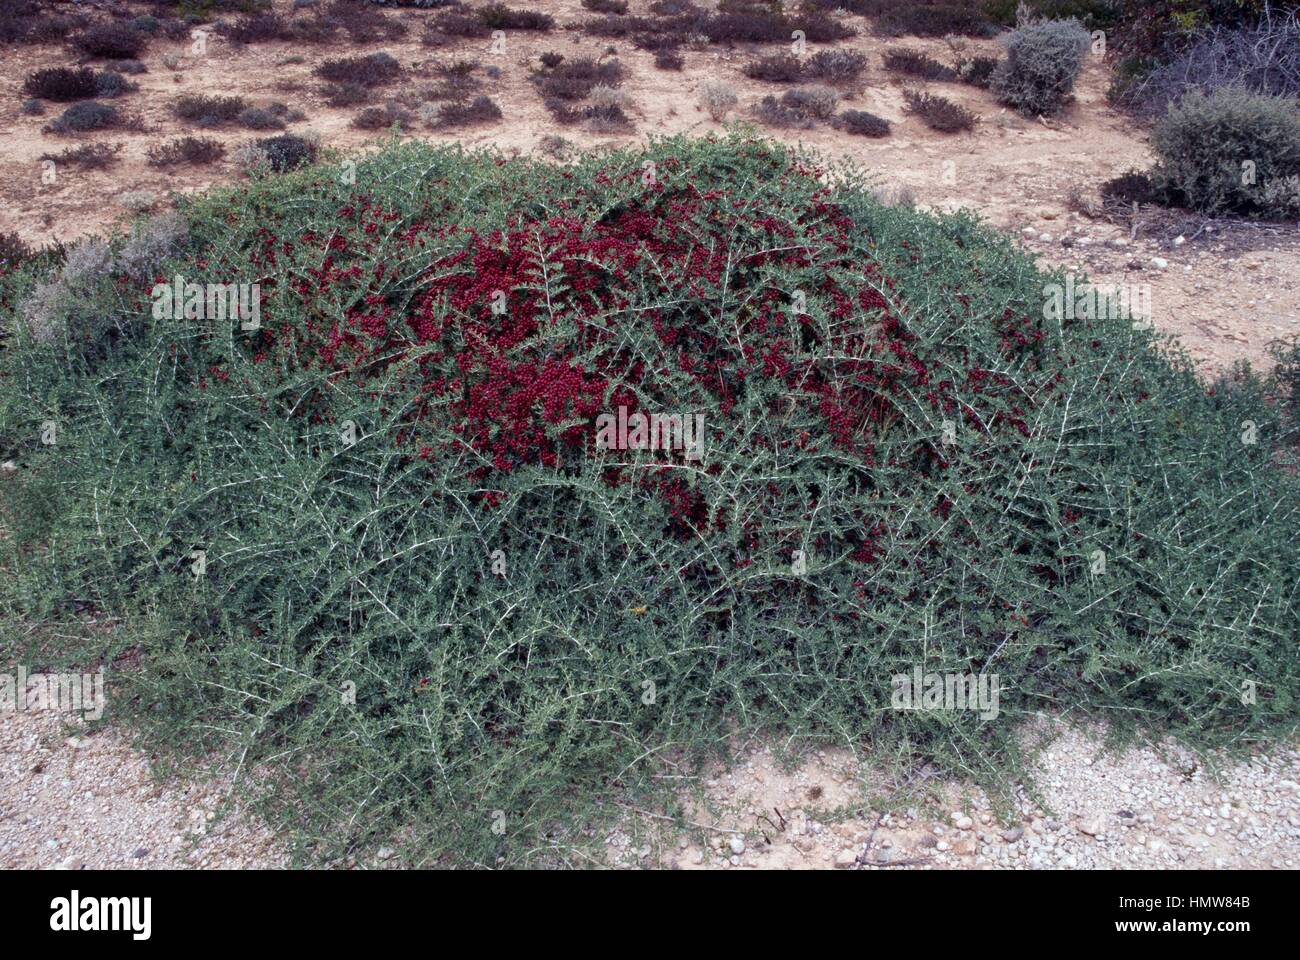 Enchylaena sp, Amaranthaceae. Stock Photo